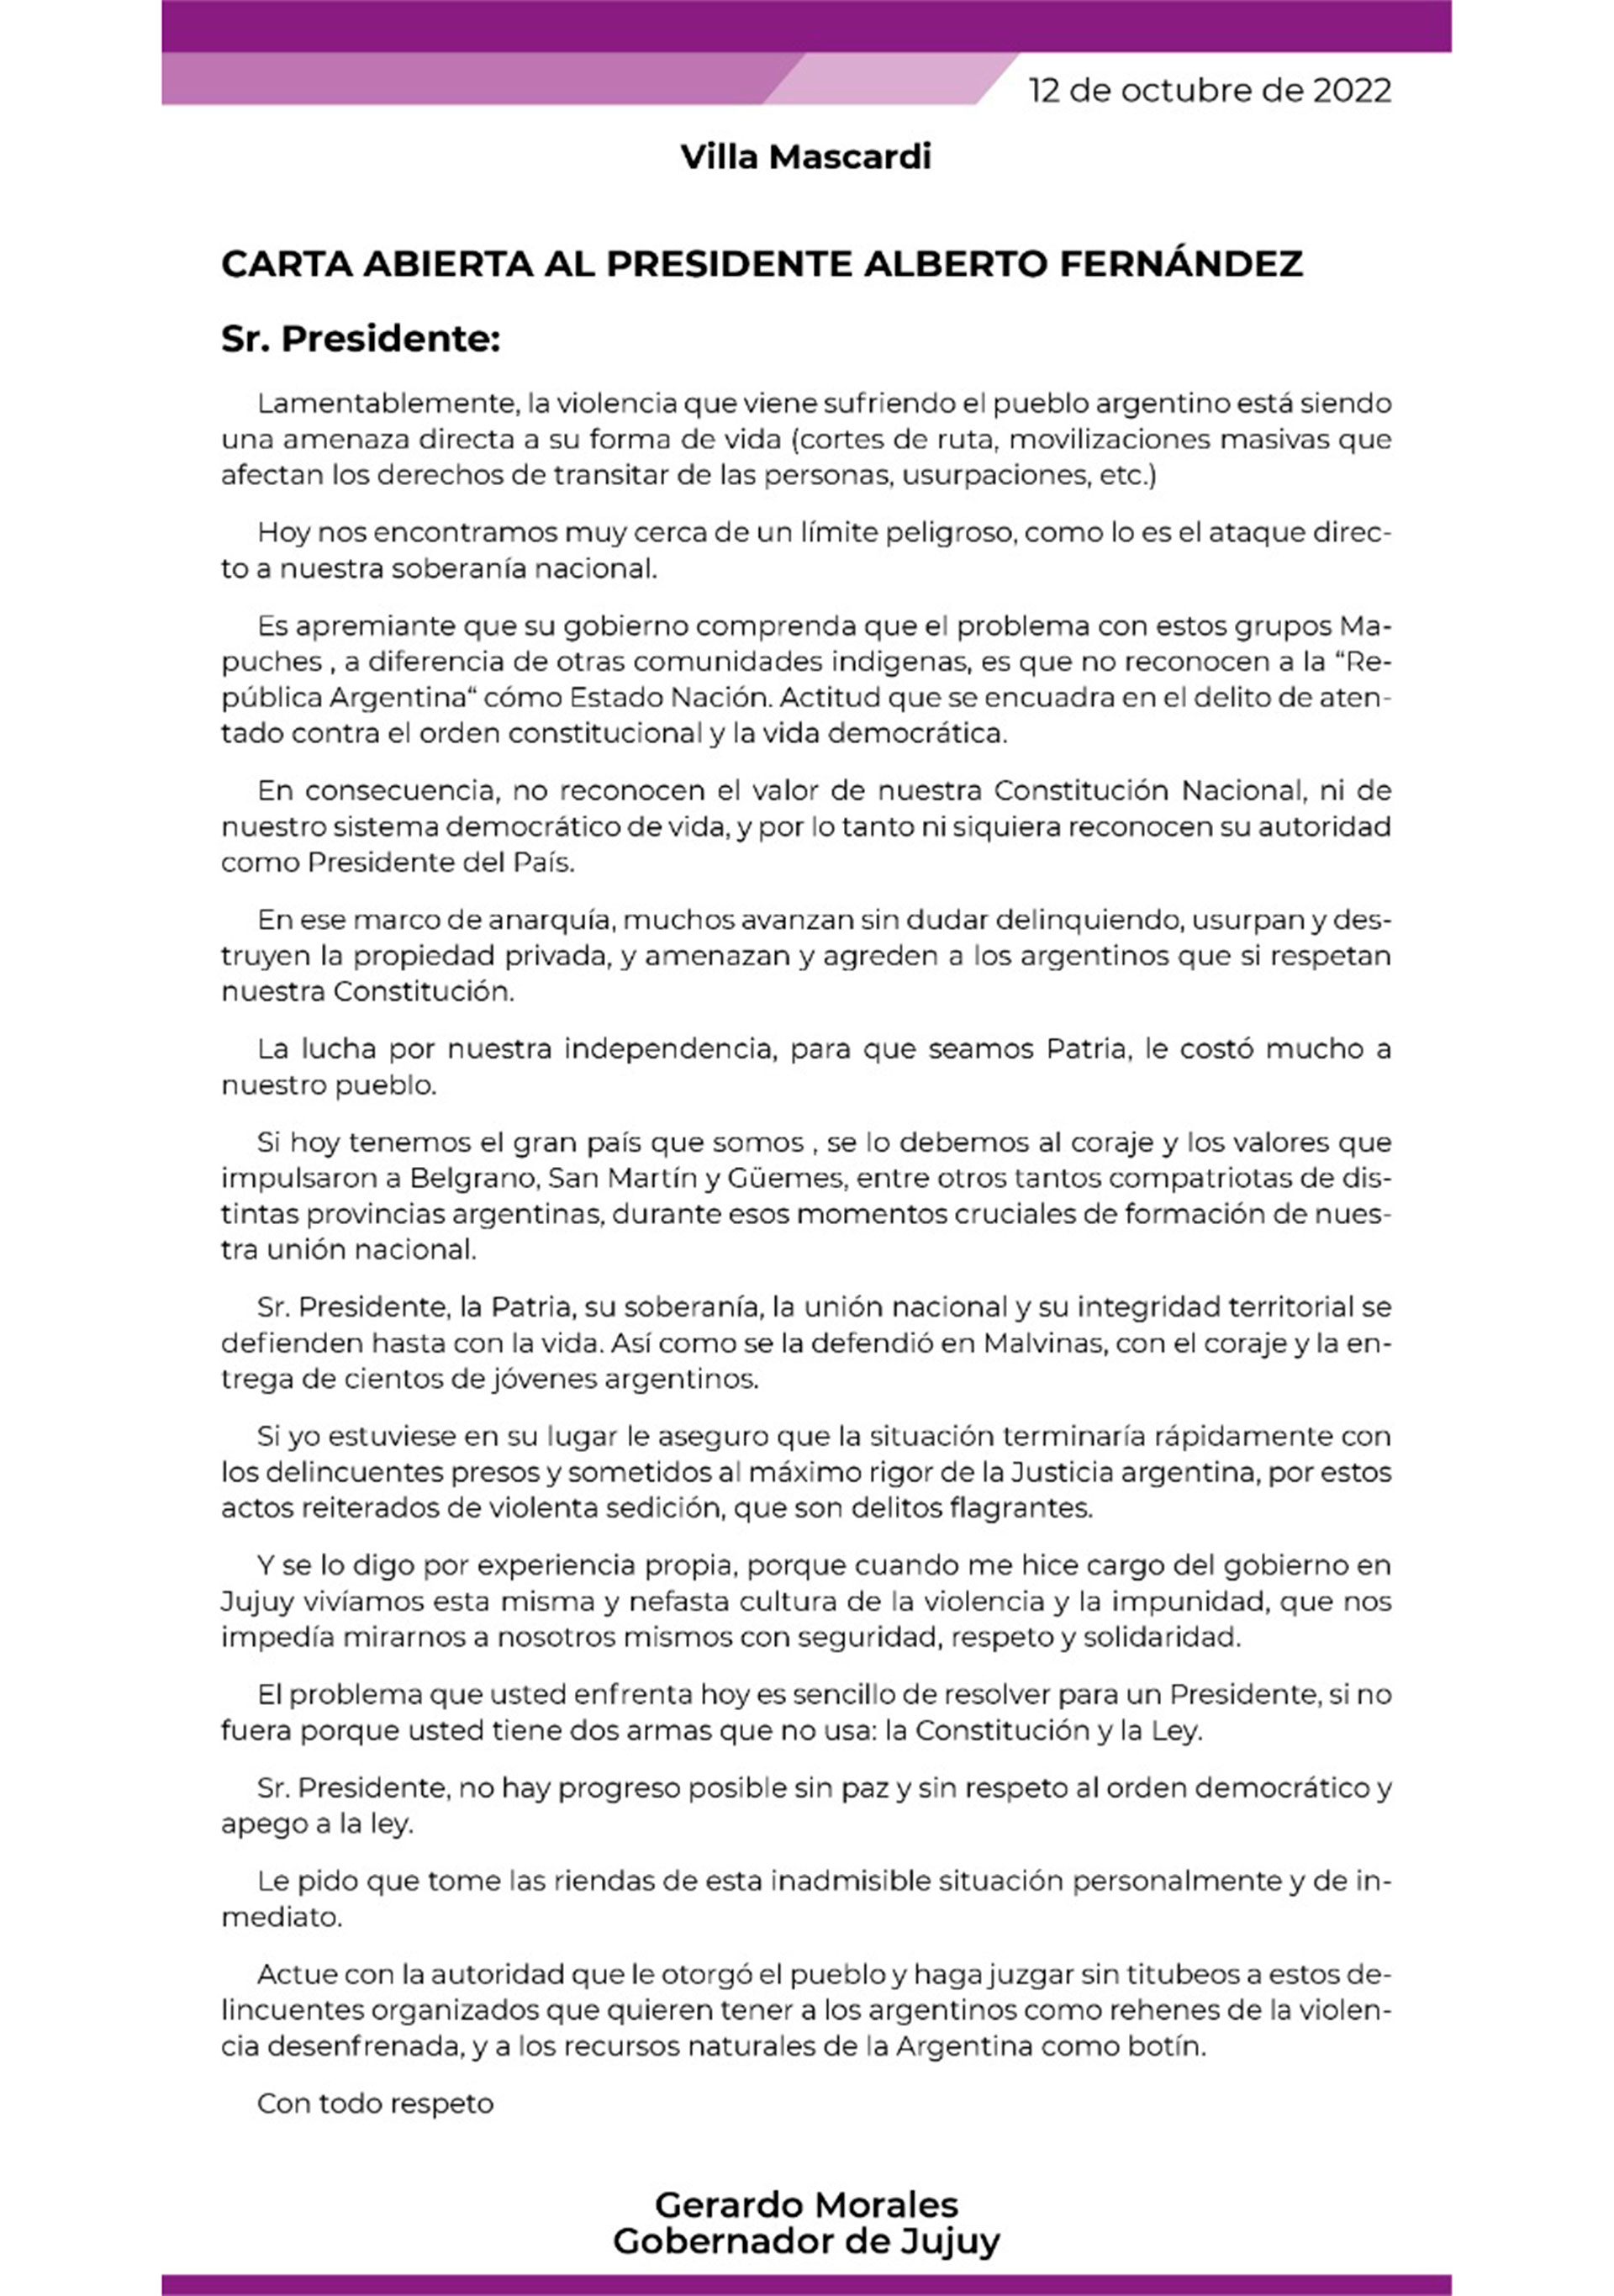 Carta abierta de Gerardo Morales, gobernador de la provincia de Jujuy, al presidente Alberto Fernández por el conflicto con las comunidades mapuches en Villa Mascardi.